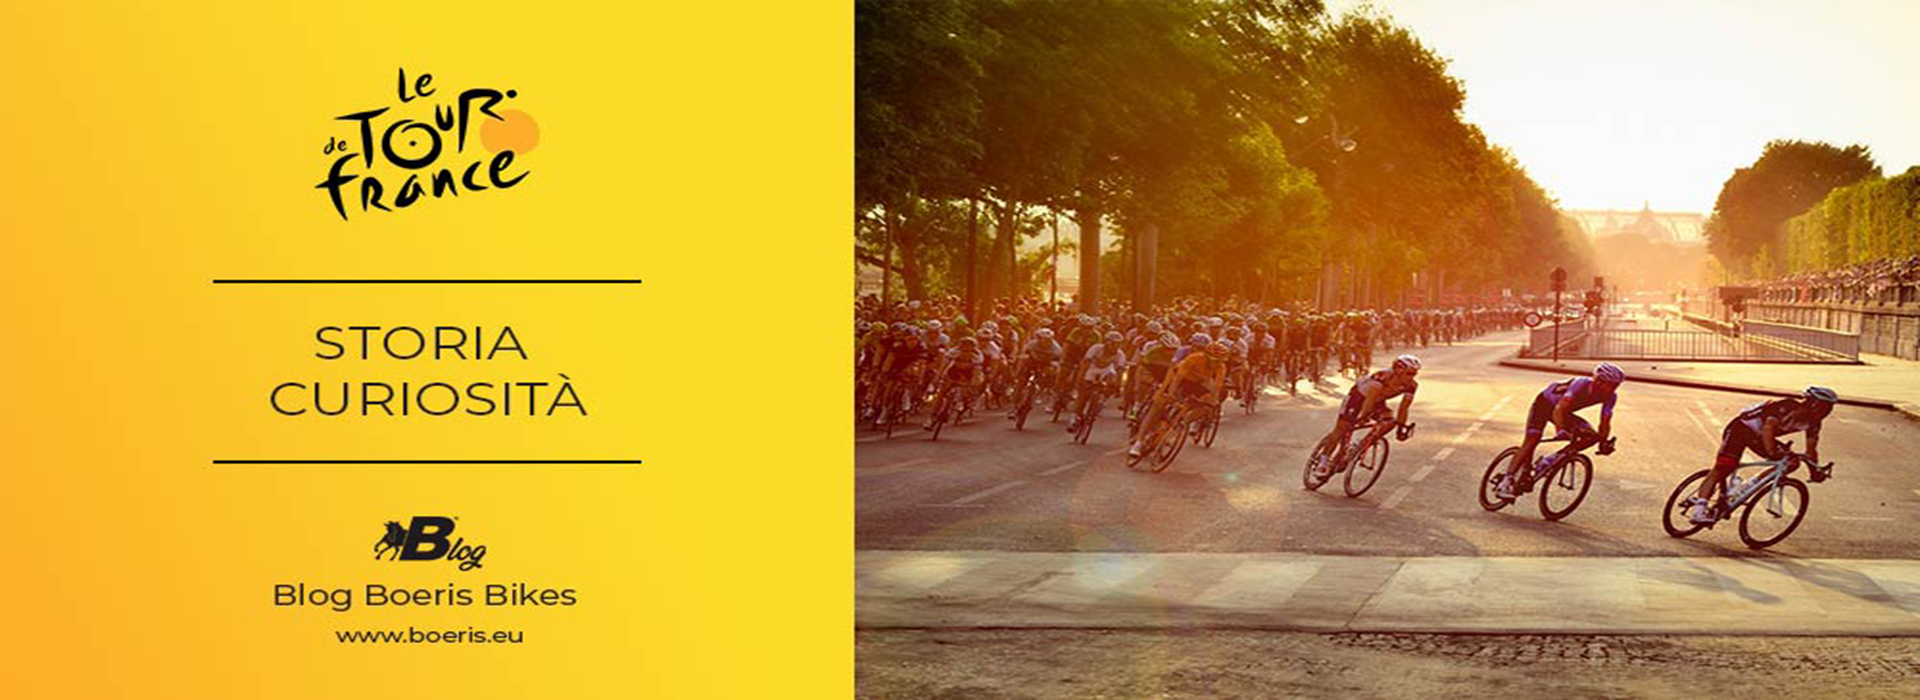 Copertina Articolo di Boeris Bikes Torino Sulla storia e curiosità del Tour de France corridori in gruppo sugli Champs Èlysées